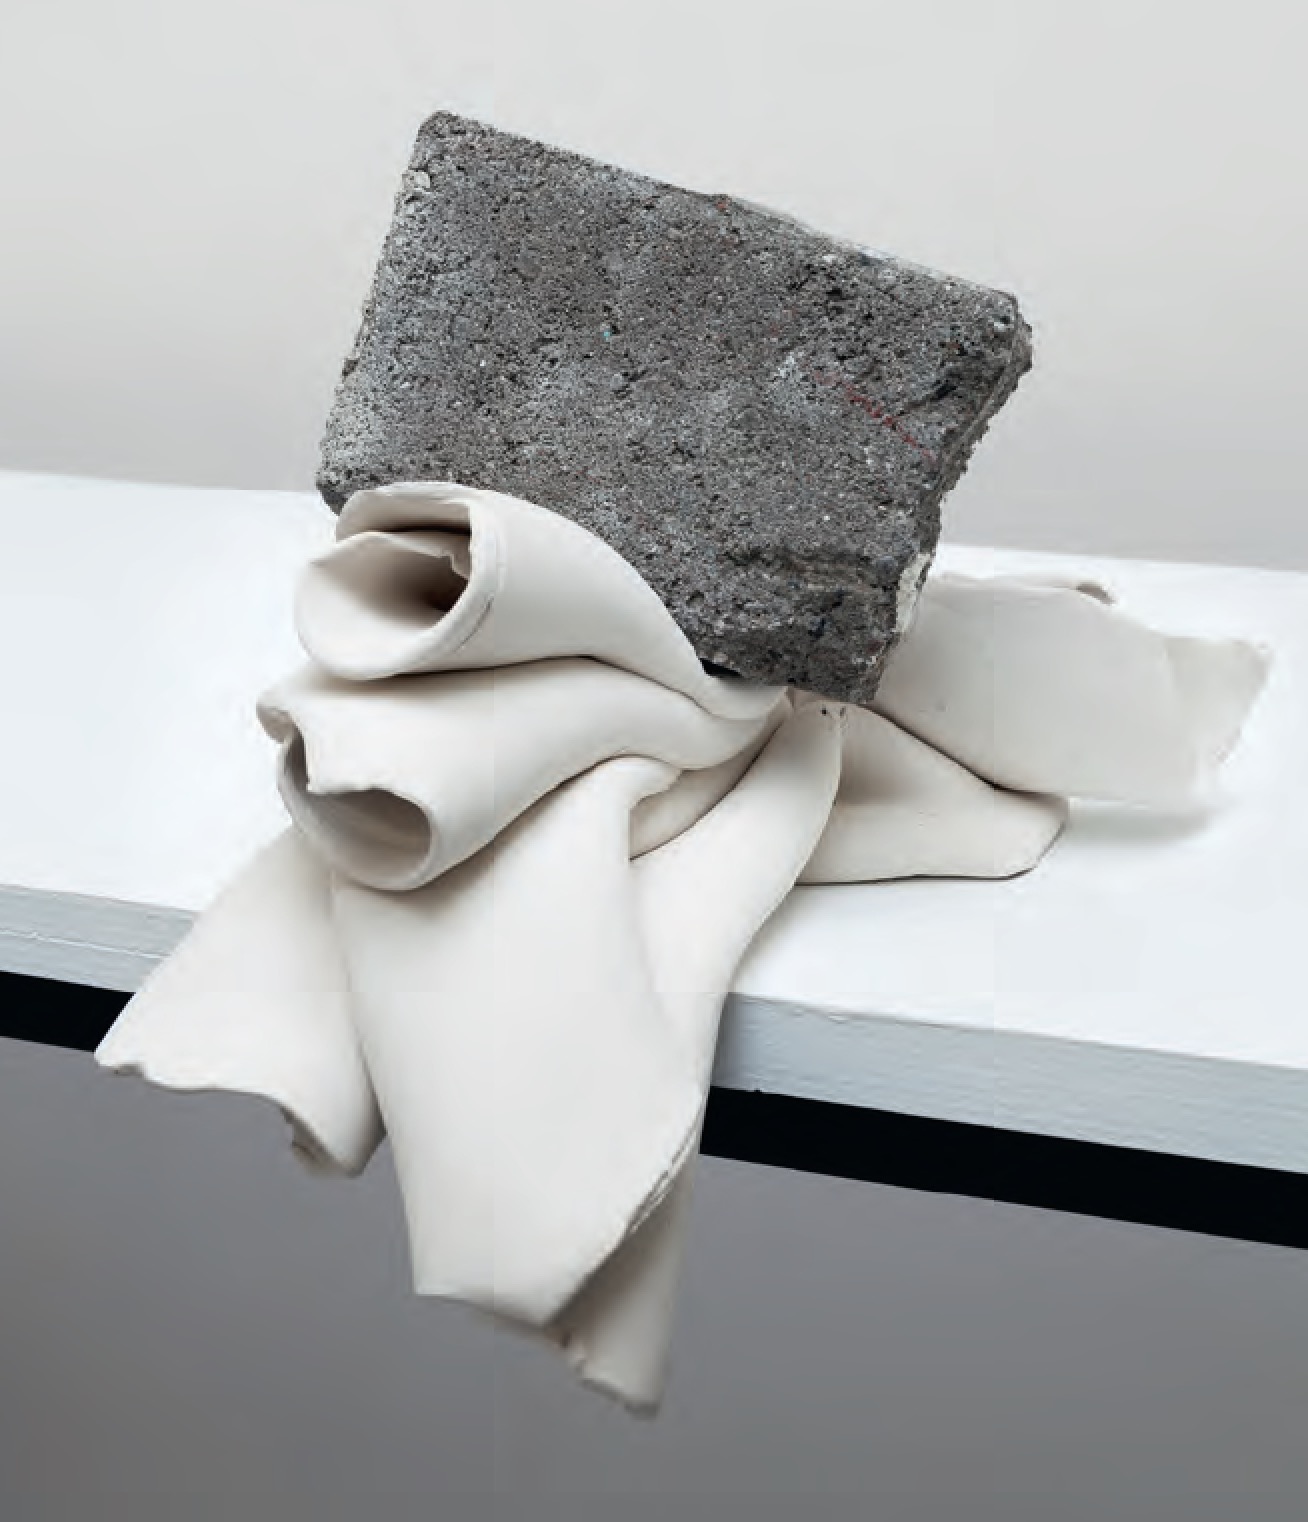 Untitled (with brick), 2014 Unglazed ceramic, concrete – Marco Chiandetti